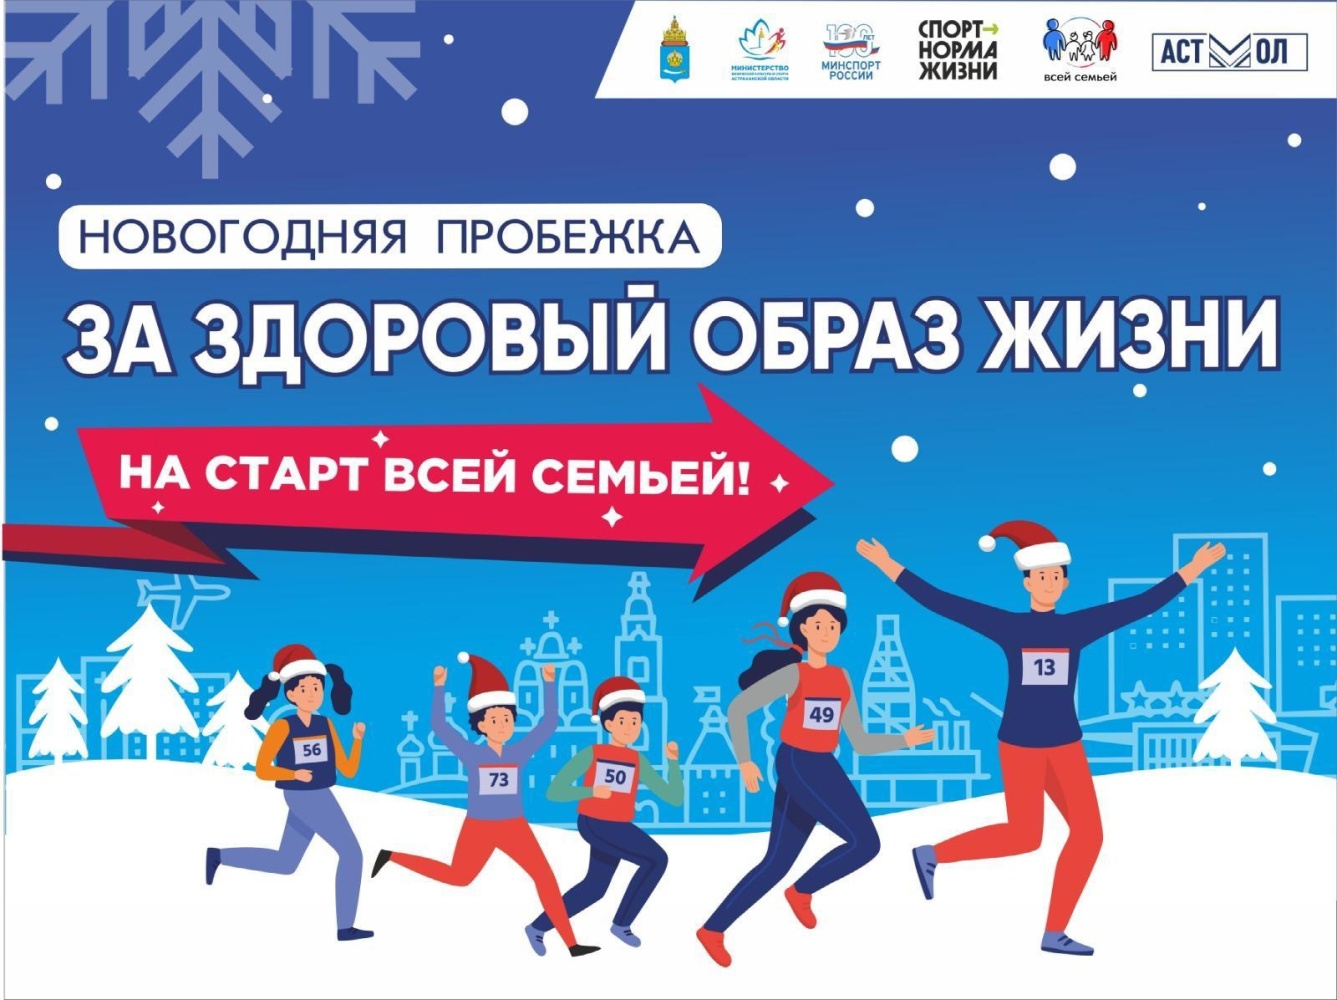 В первый день нового года в Астрахани пройдёт трезвая пробежка